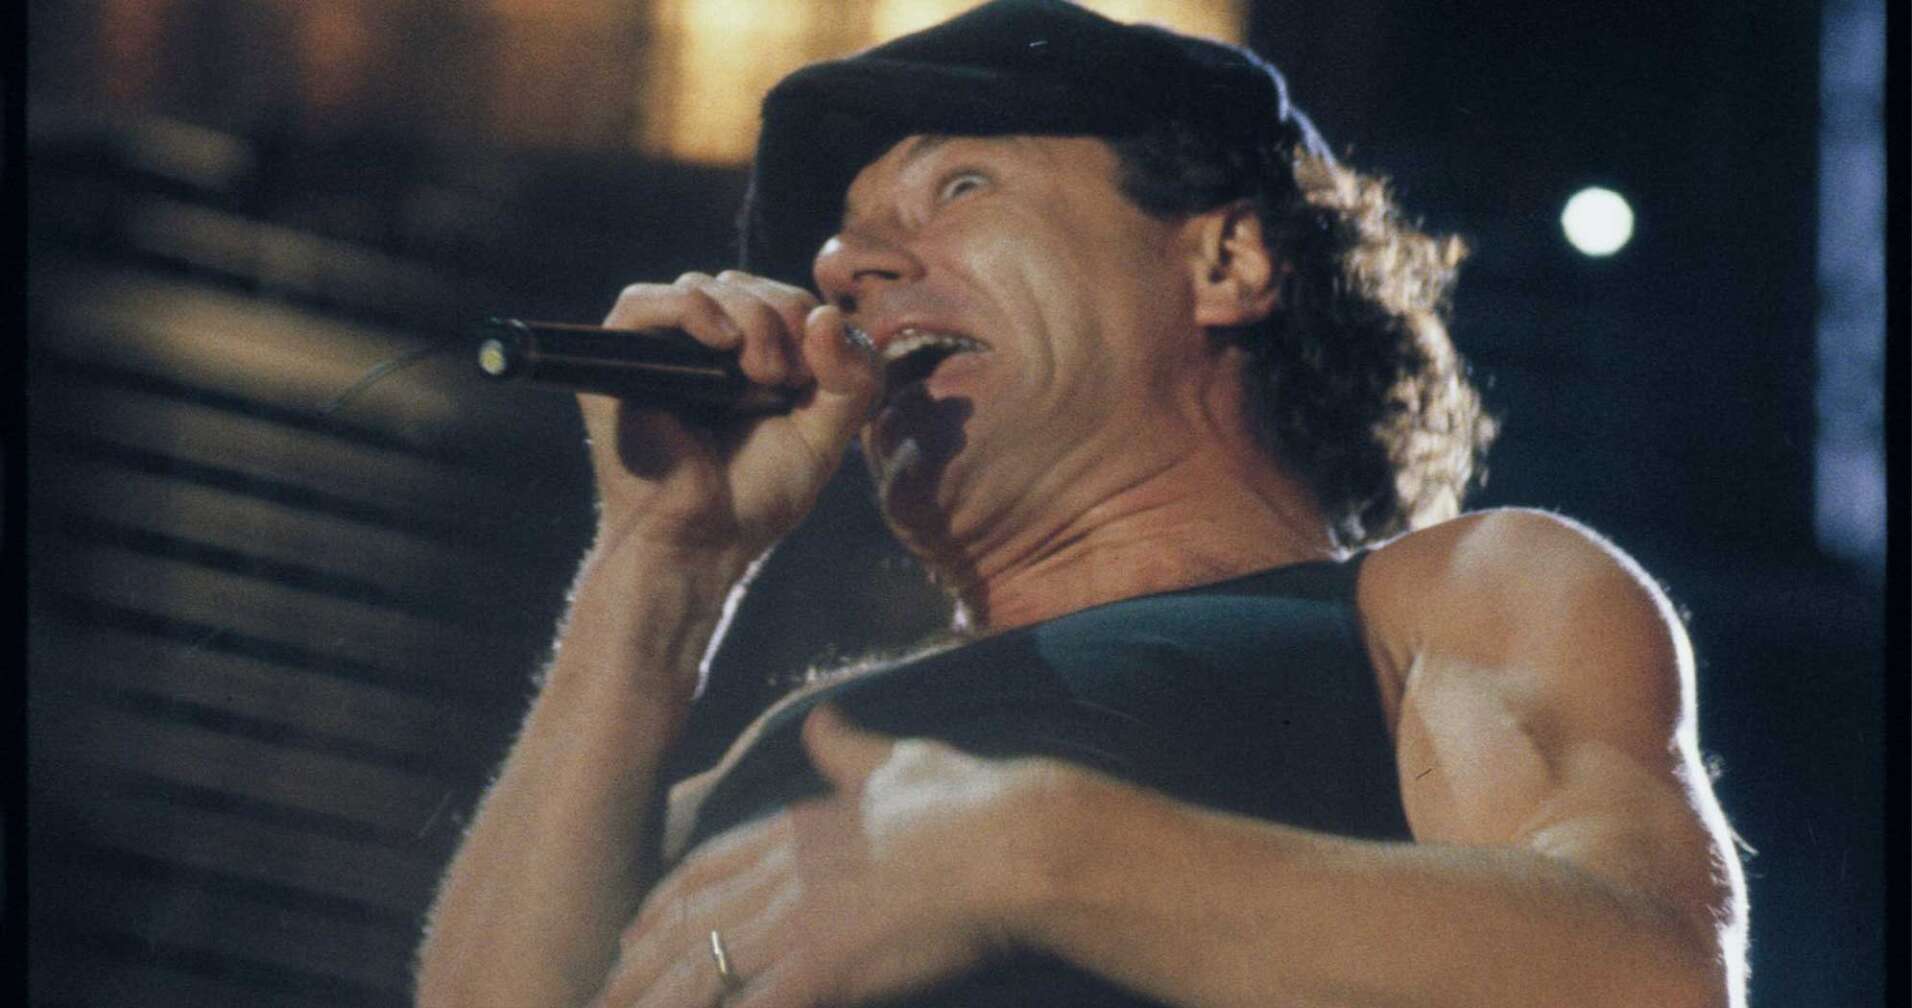 Ein Bild von Brian Johnson, Sänger von AC/DC, auf der Bühne 2003